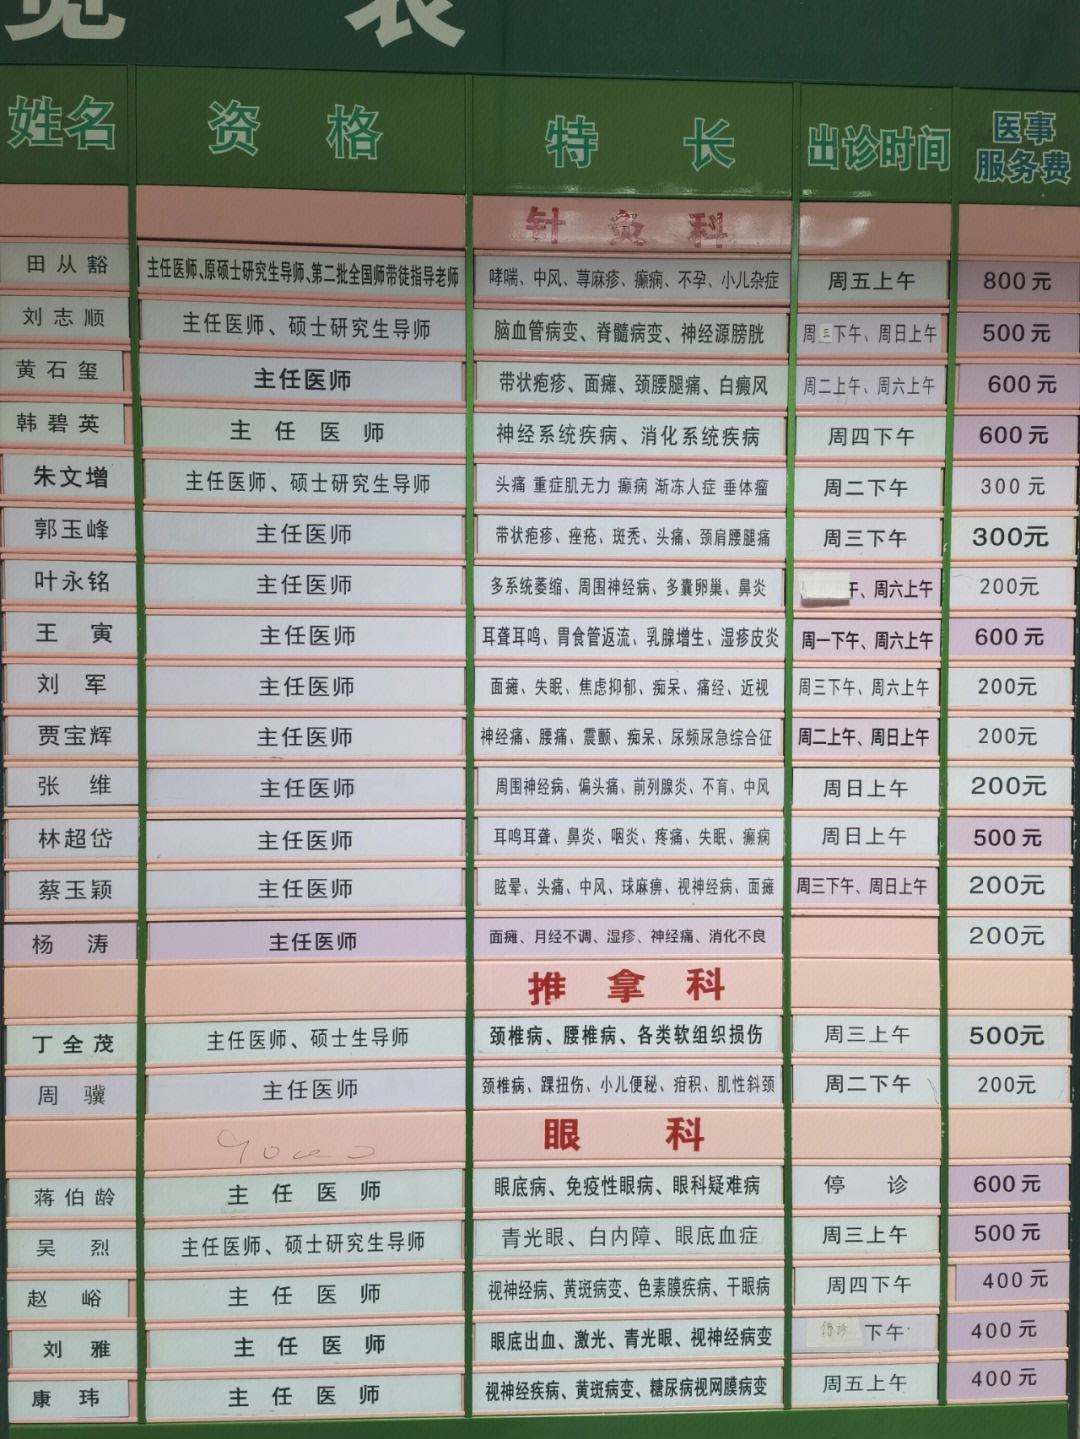 包含广安门中医院黄牛票贩子号贩子联系方式的词条